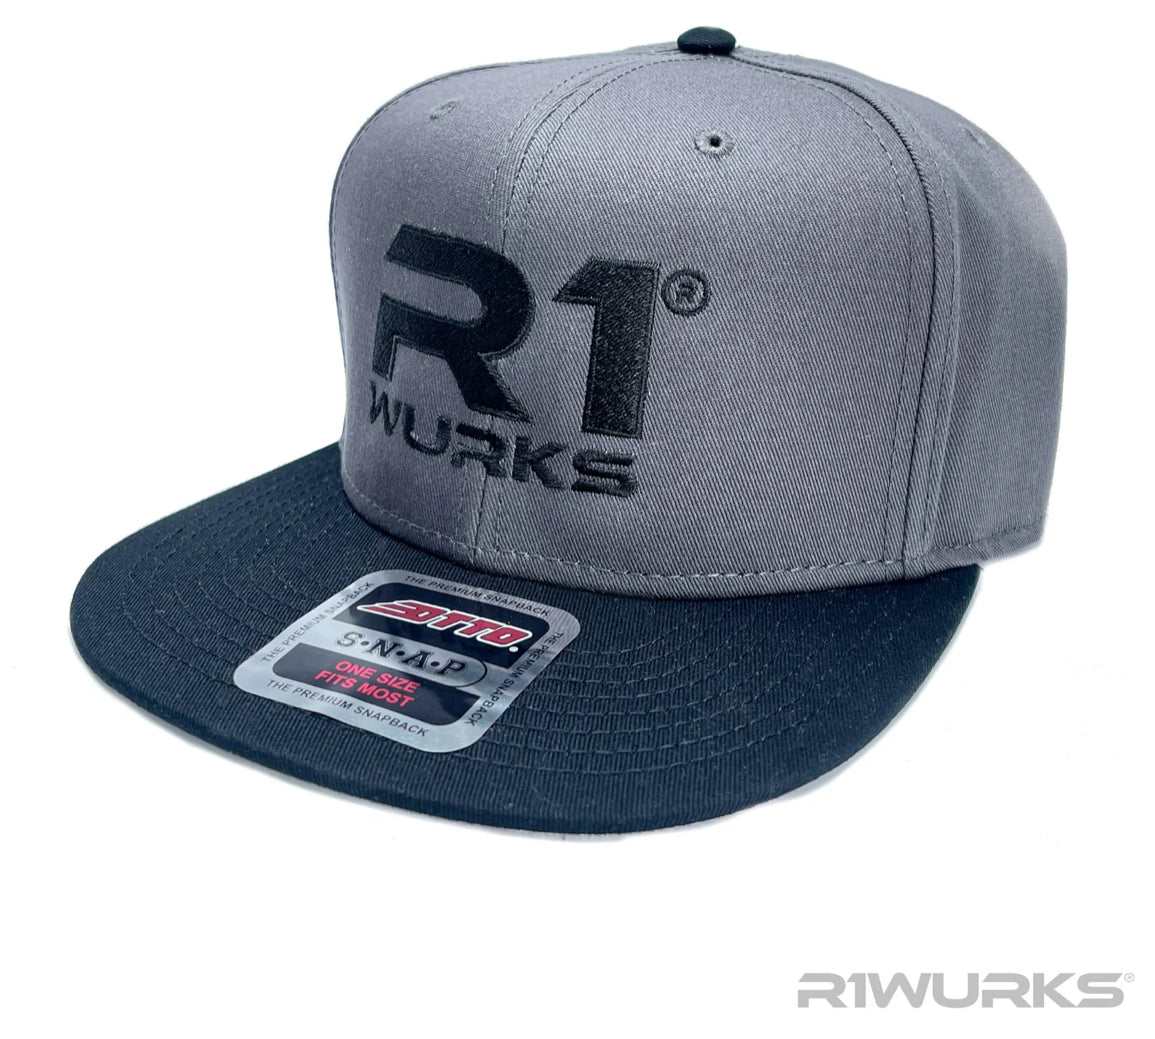 R1 Wurks Premium Snapback Hat